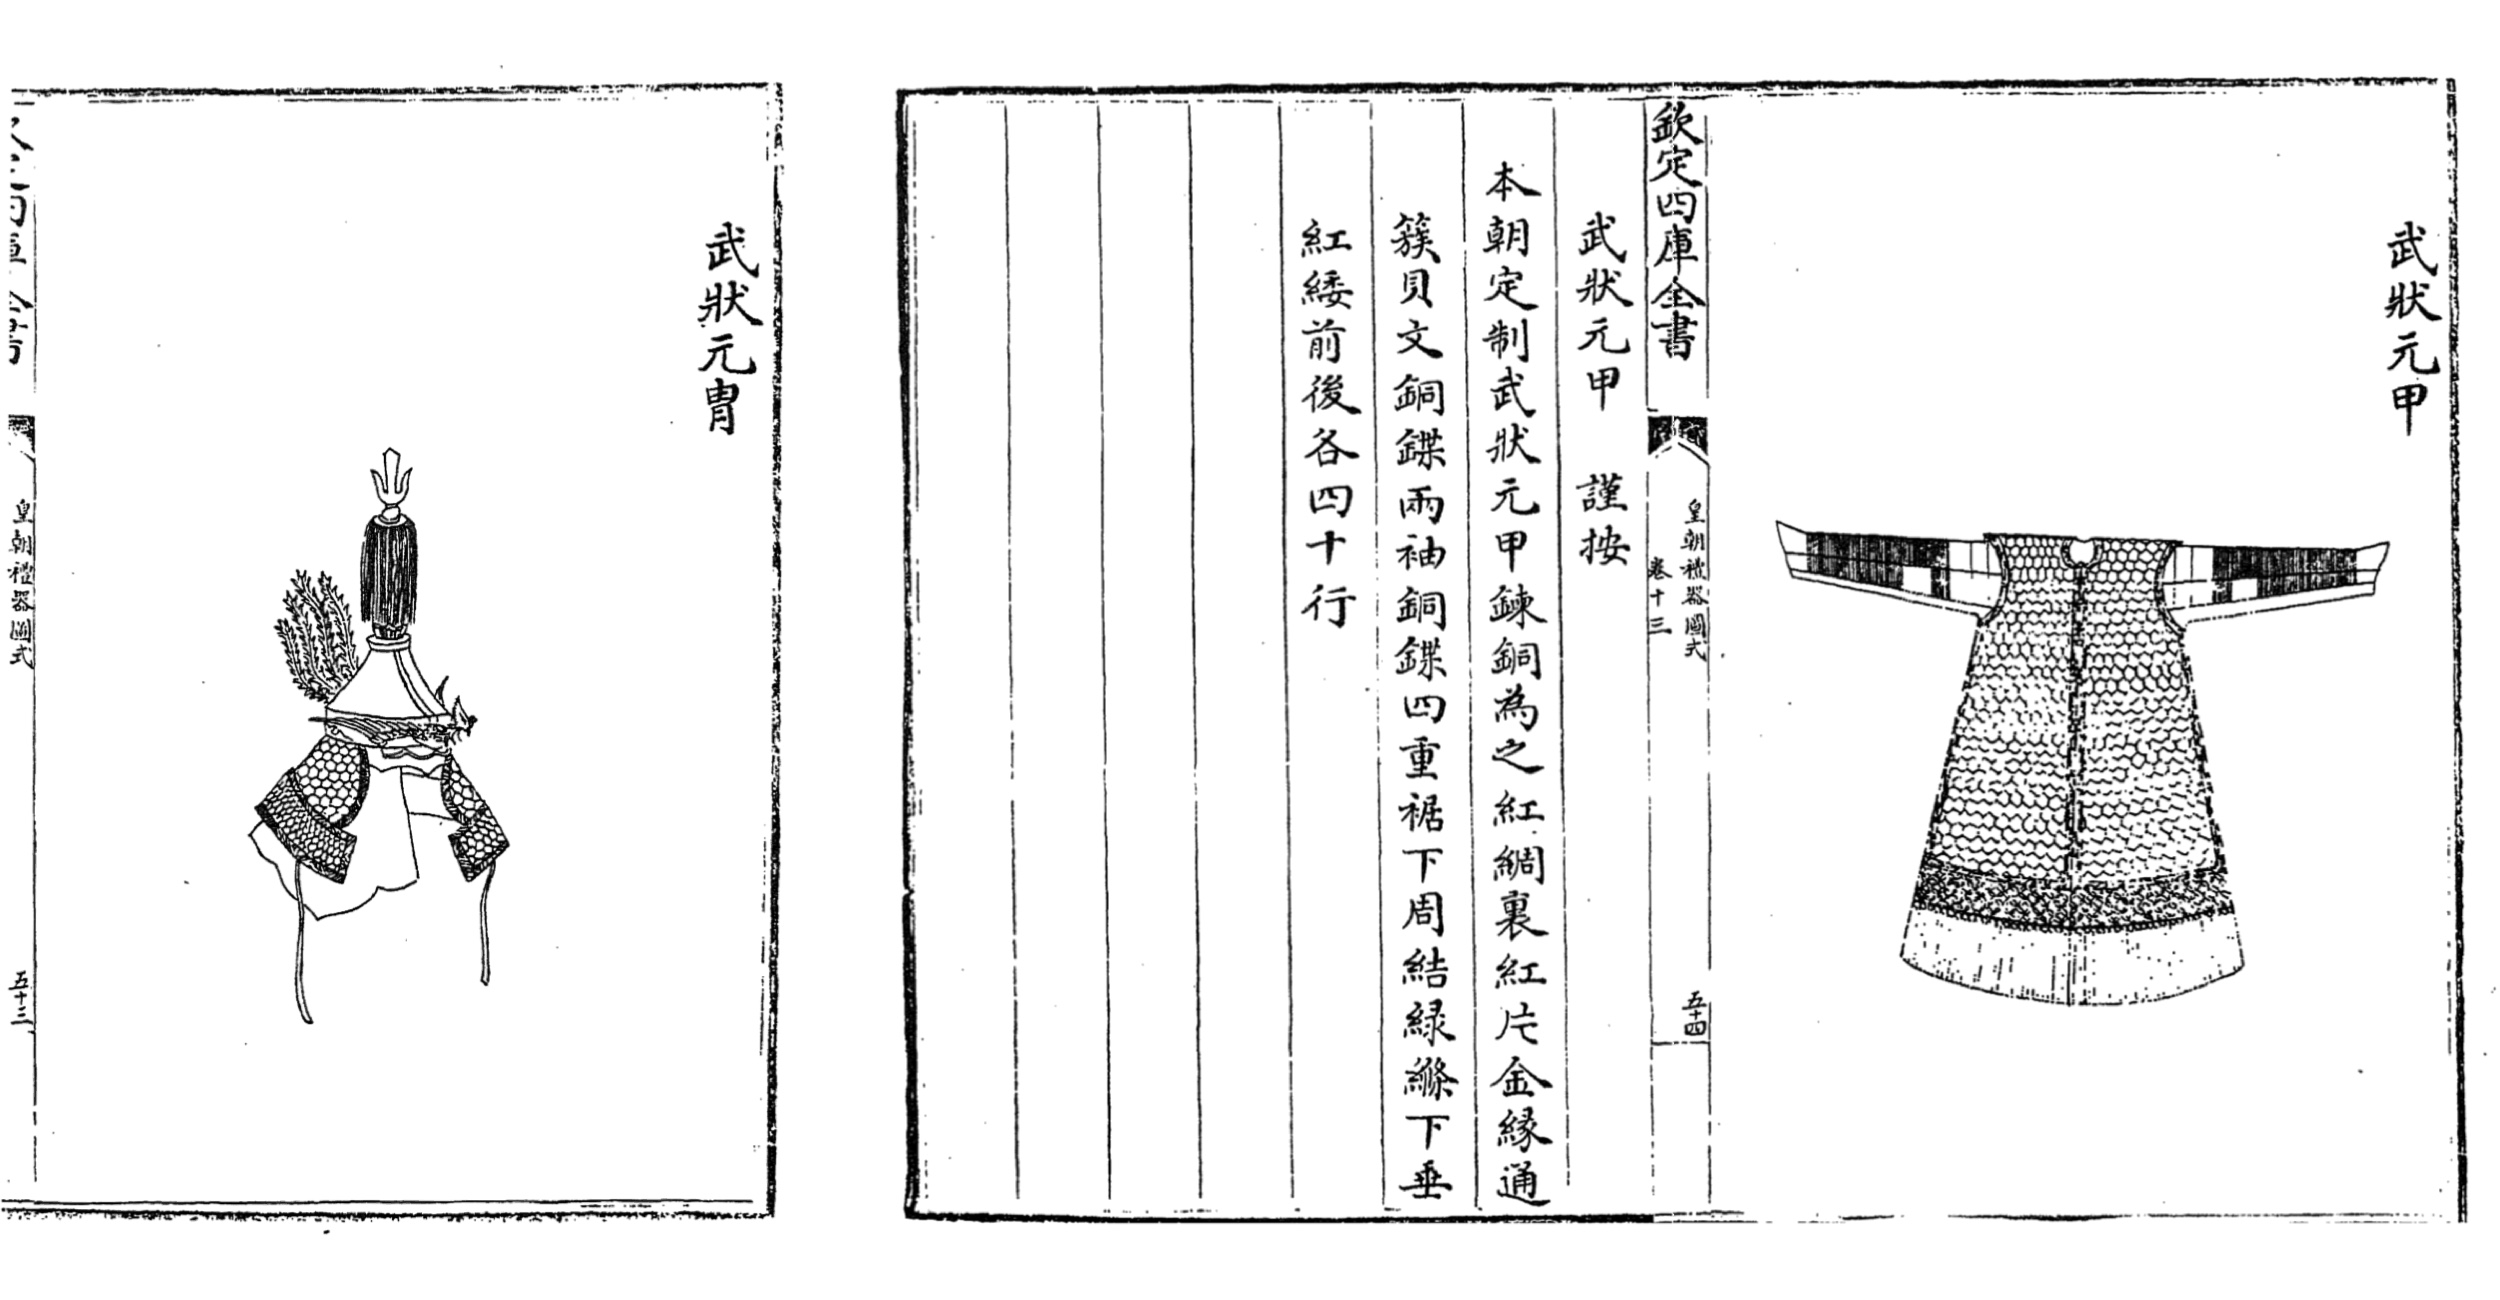 Zhuangyuan armor